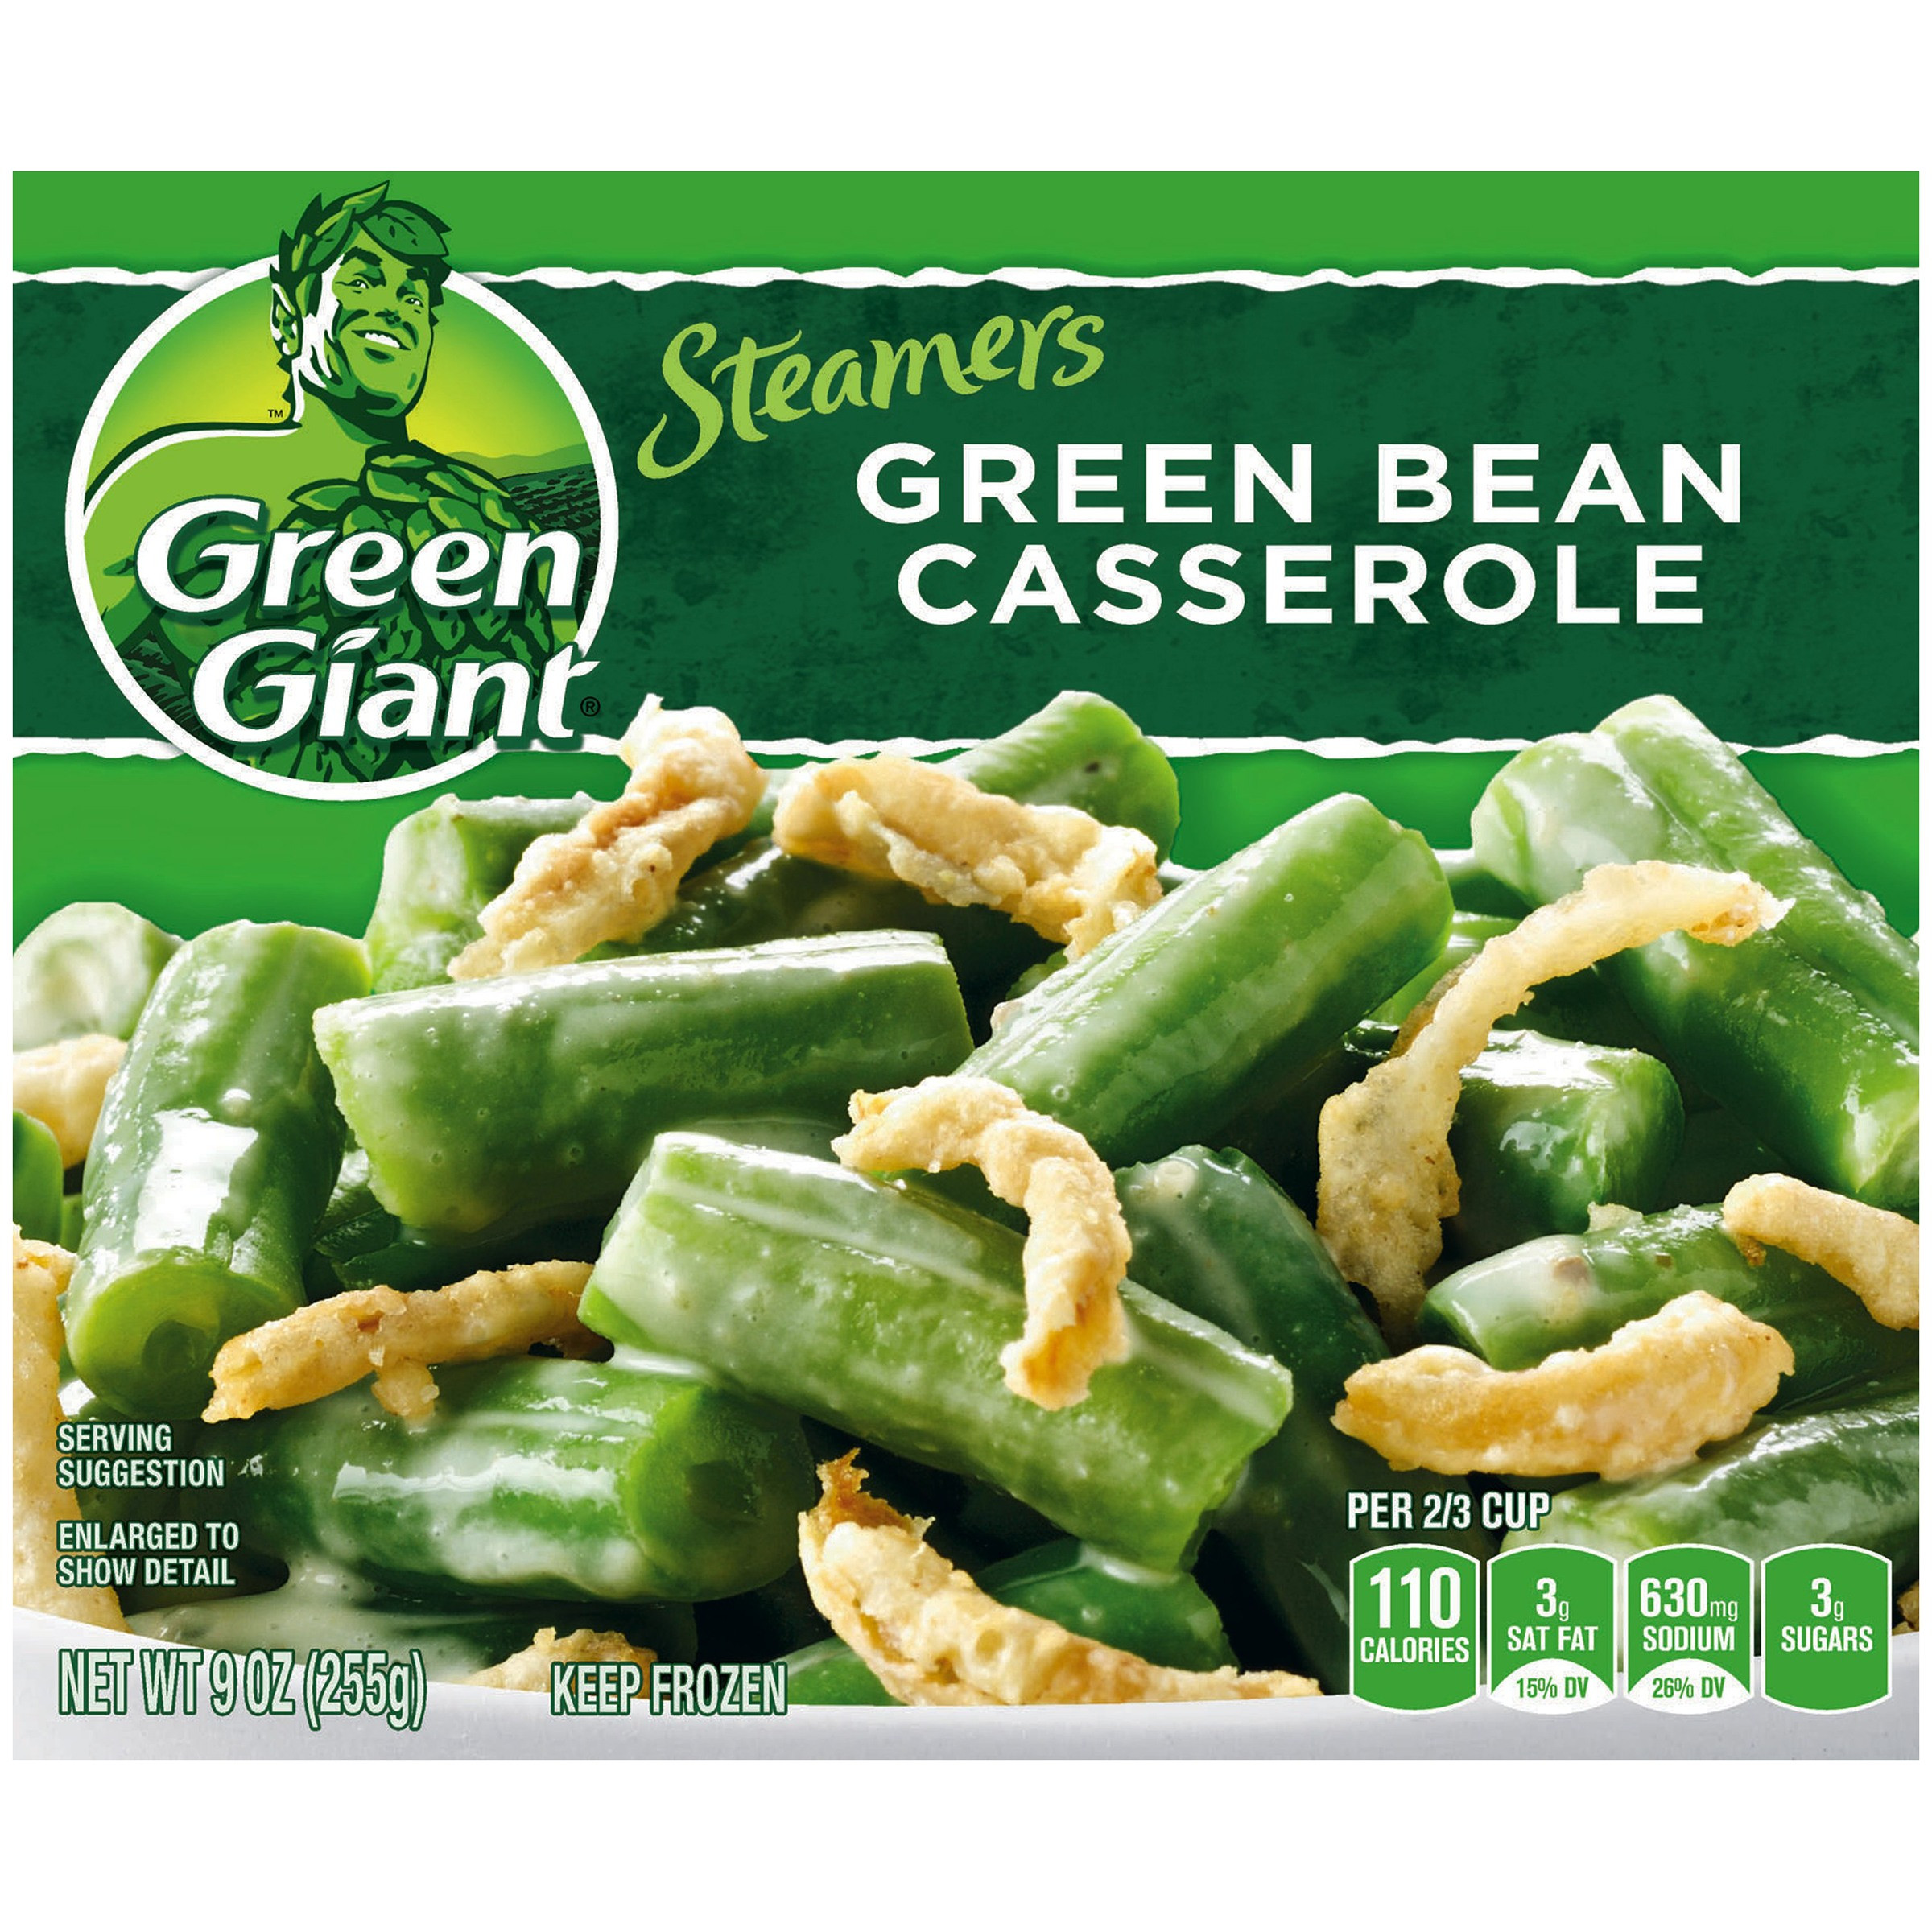 Frozen Green Bean Casserole
 frozen green bean casserole